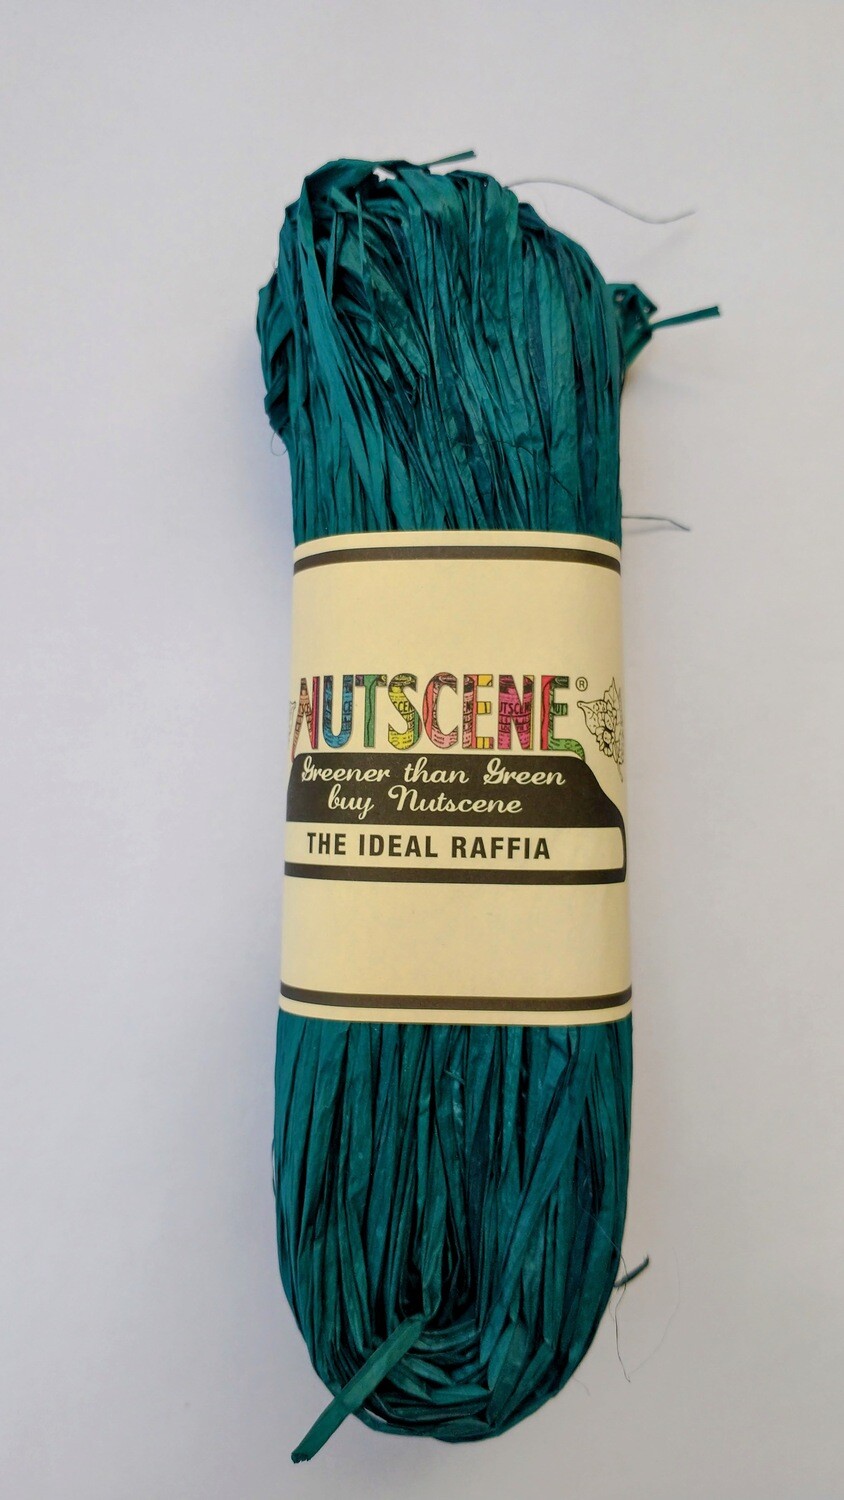 Nutscene raffia choice of colours